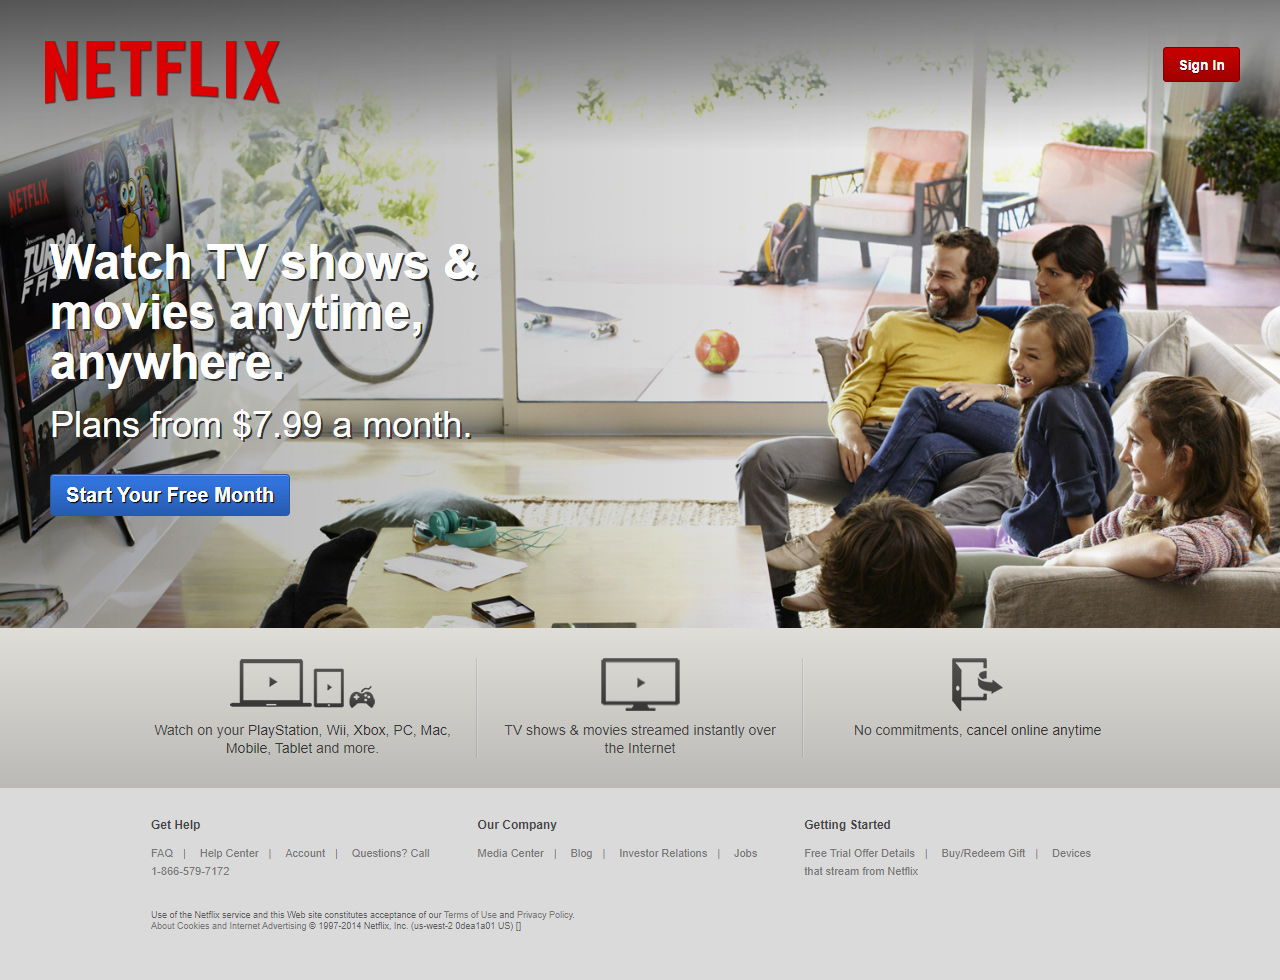 Netflix website in 2014